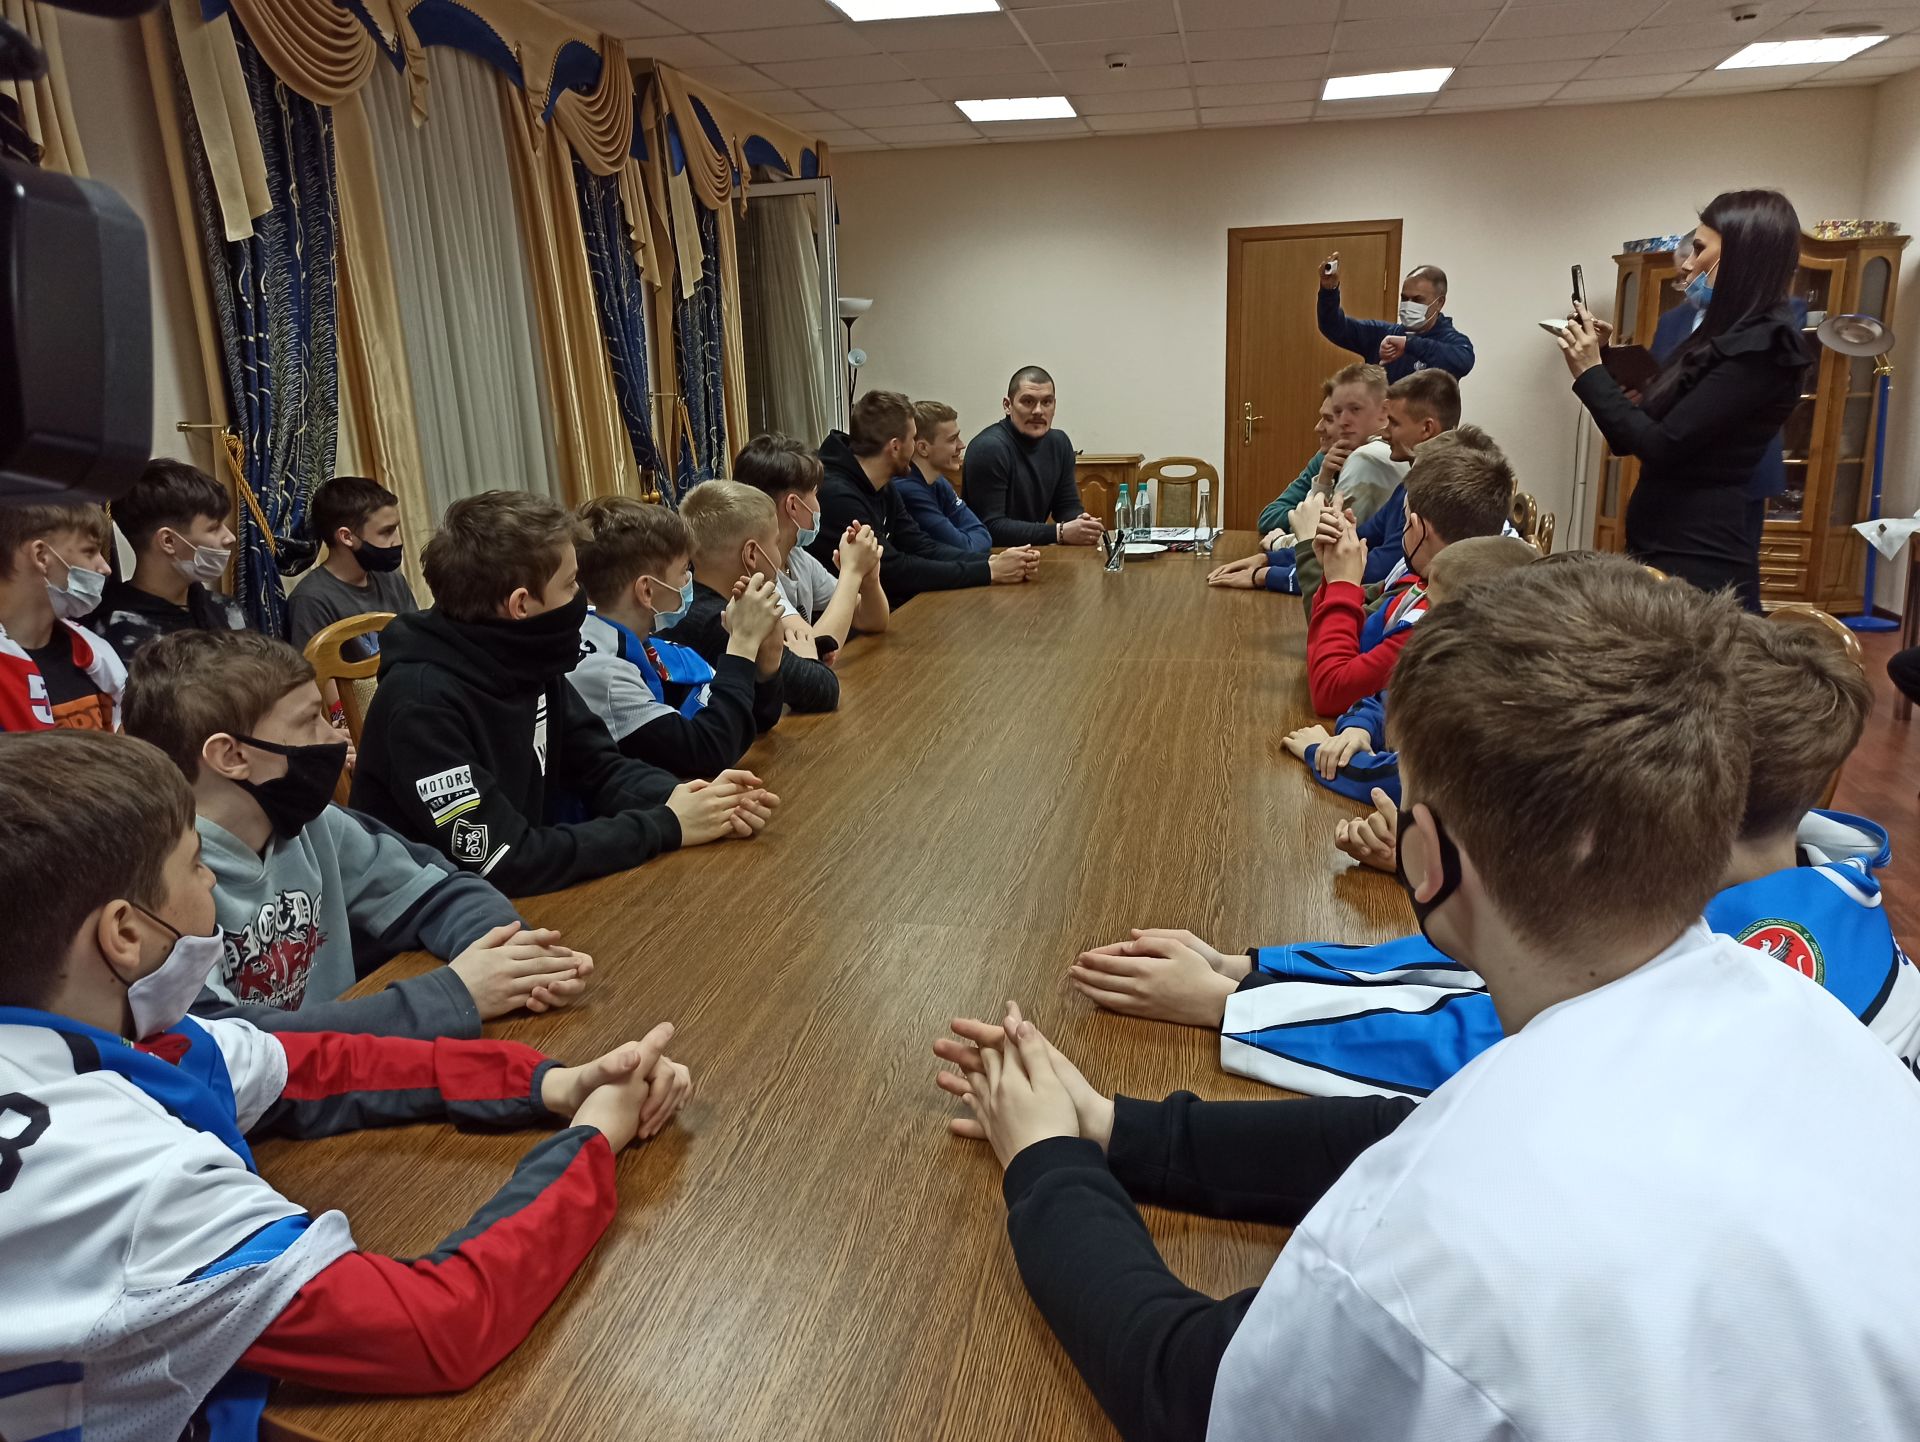 Знаменитые игроки Континентальной хоккейной лиги провели мастер-класс для юных чистопольцев (фоторепортаж)